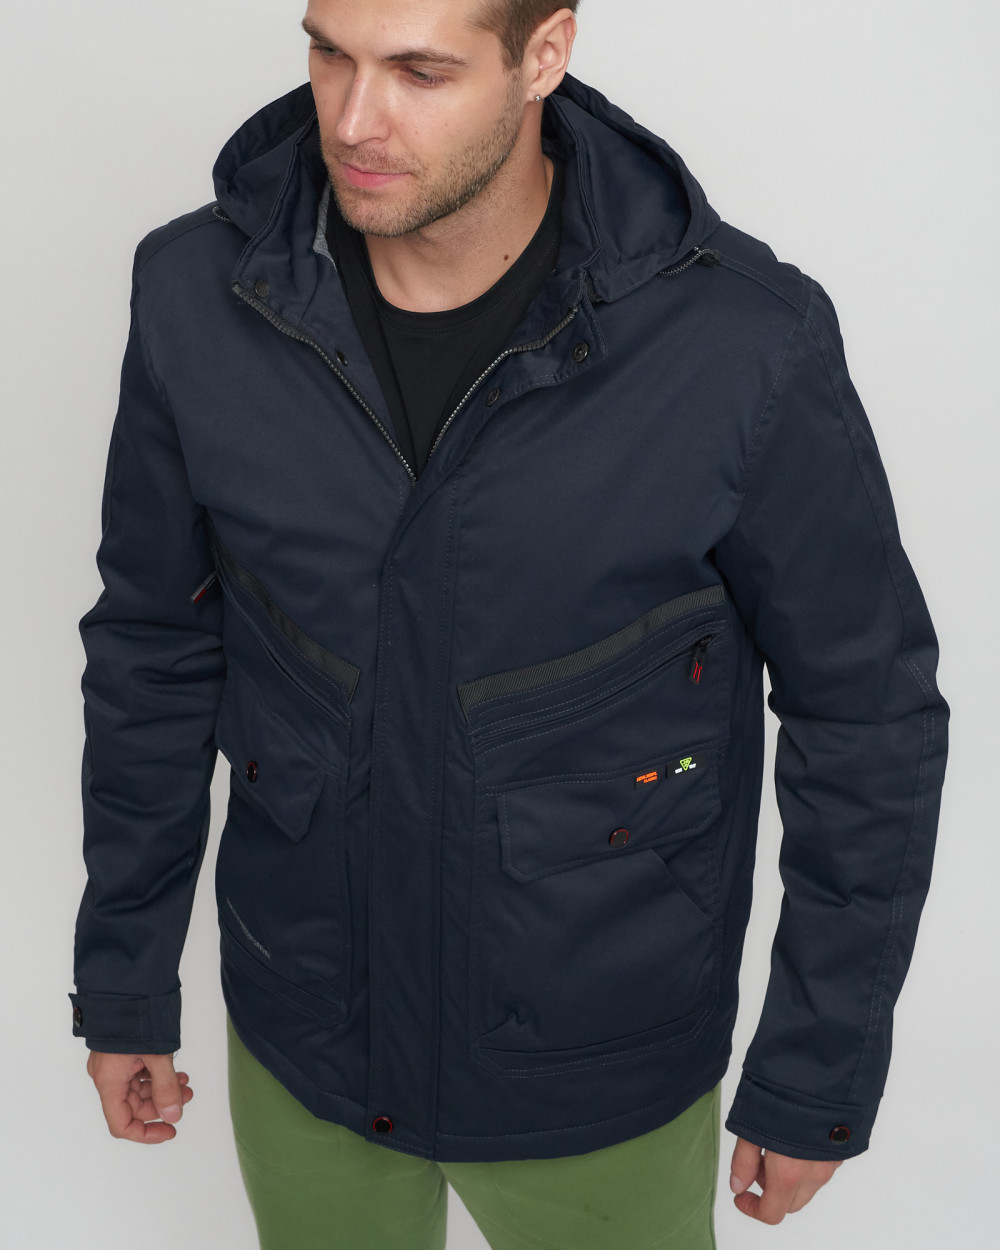 Купить куртку мужскую спортивную весеннюю оптом от производителя недорого в Москве 8596TS 1